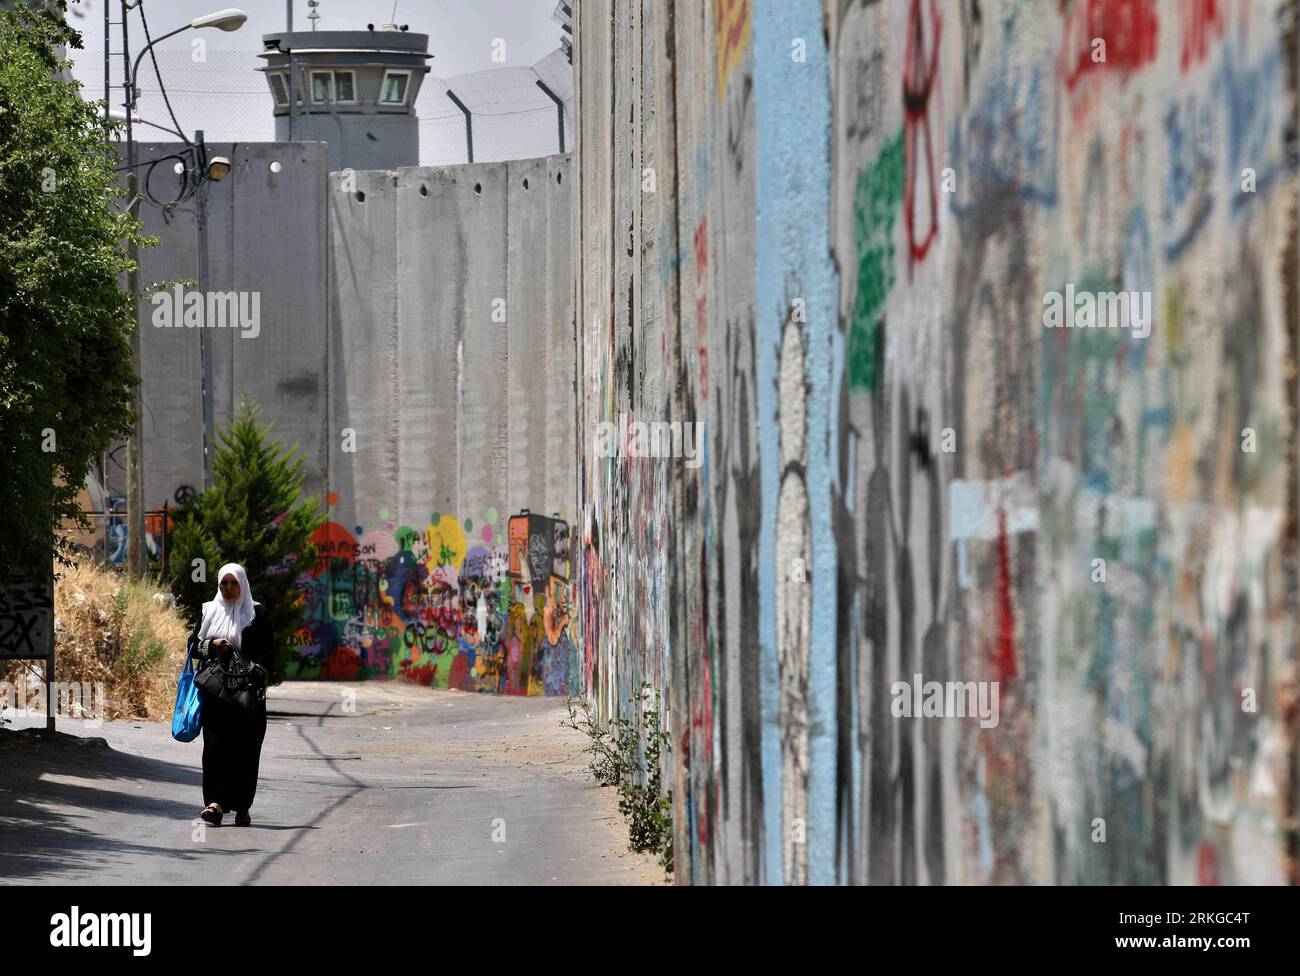 Bildnummer: 55578702 Datum: 08.07.2011 Copyright: imago/Xinhua (110708)-- CISGIORDANIA, 8 LUGLIO 2011 (Xinhua) -- Una donna palestinese cammina accanto a una sezione del controverso muro di separazione israeliano nella città di Betlemme in Cisgiordania l'8 luglio 2011. I palestinesi celebreranno sabato il settimo anniversario della sentenza della Corte internazionale di giustizia dell'Aia del 9 luglio 2004, che ha definito illegale e dovrebbe essere abbattuta la barriera di separazione israeliana costruita intorno alla Cisgiordania. (Xinhua/Luay Sababa) MIDEAST-CISGIORDANIA-ISRAELE-BARRIERA DI SEPARAZIONE PUBLICATIONxNOTxINxCHN Gese Foto Stock